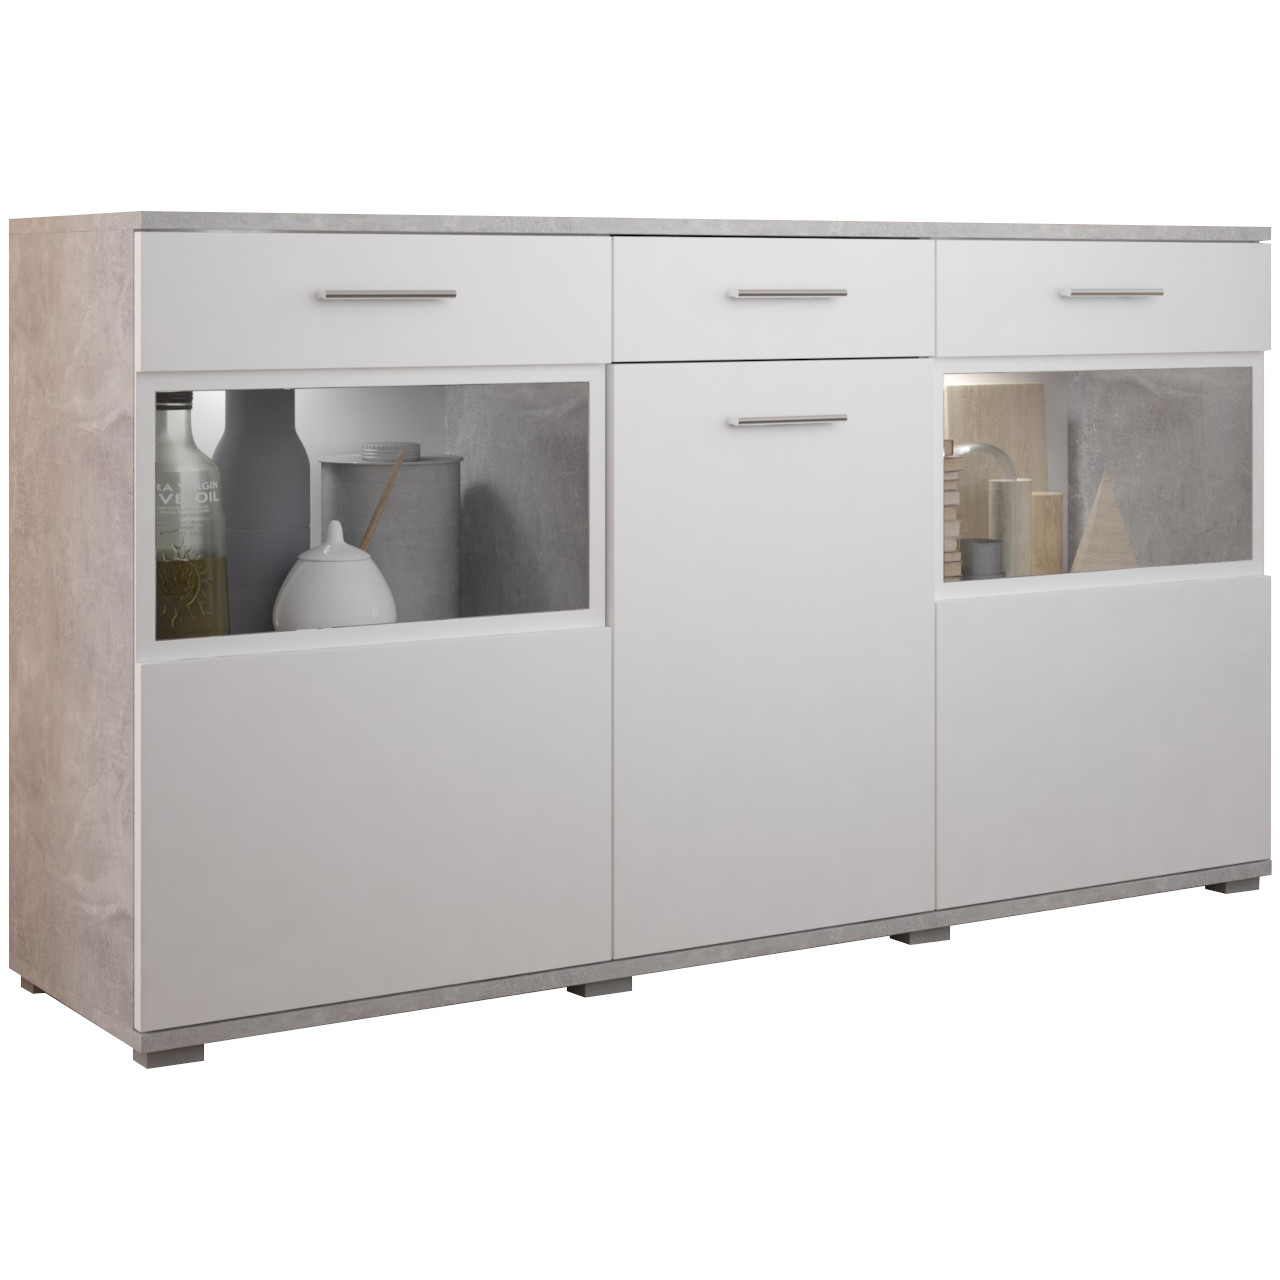 Storage cabinet BLUES / SENUL concrete / white